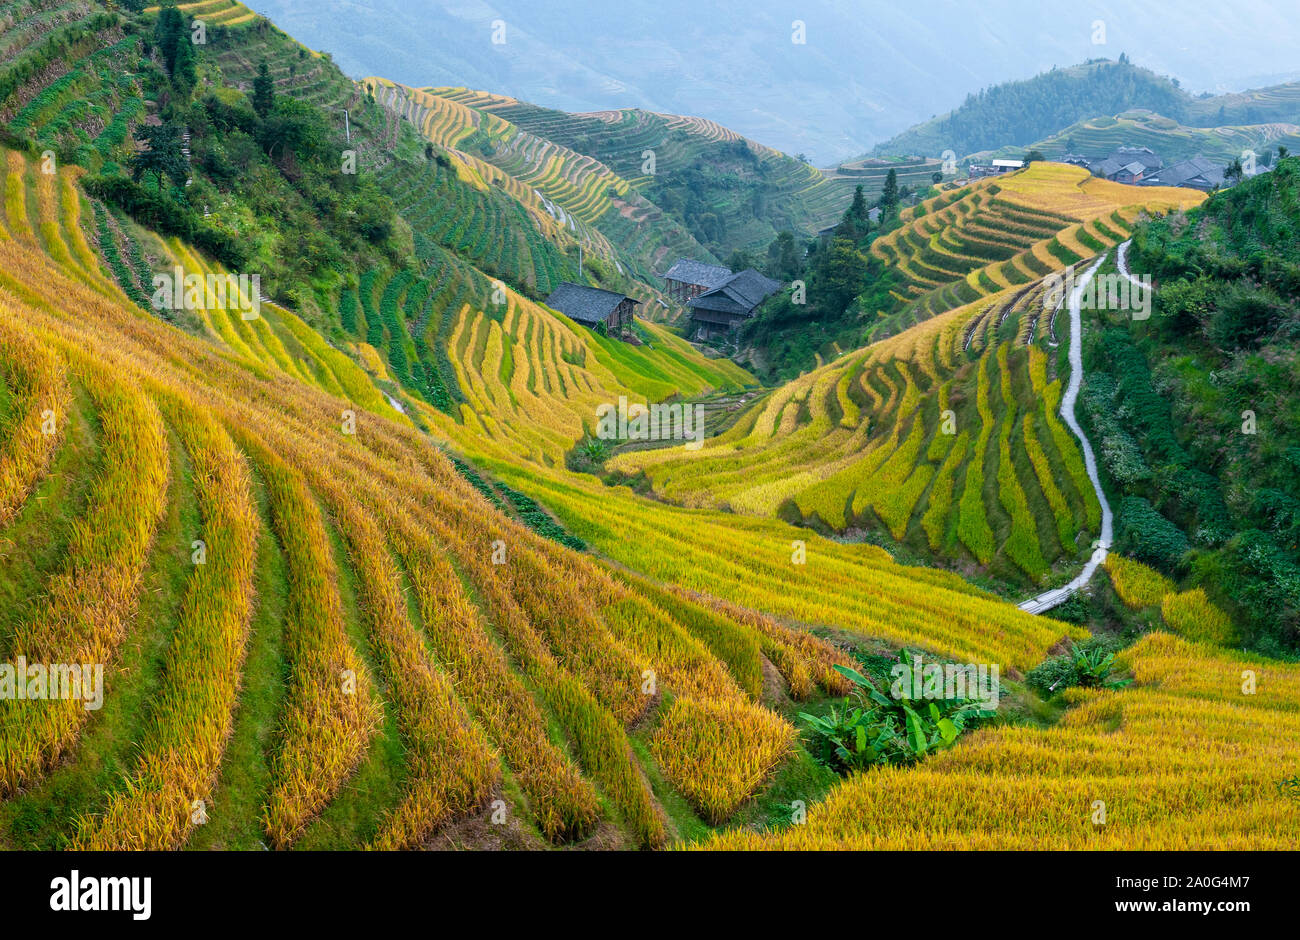 Maestose terrazze di riso nel villaggio di Ping Un, Longsheng county, provincia di Guangxi, Cina. Foto Stock